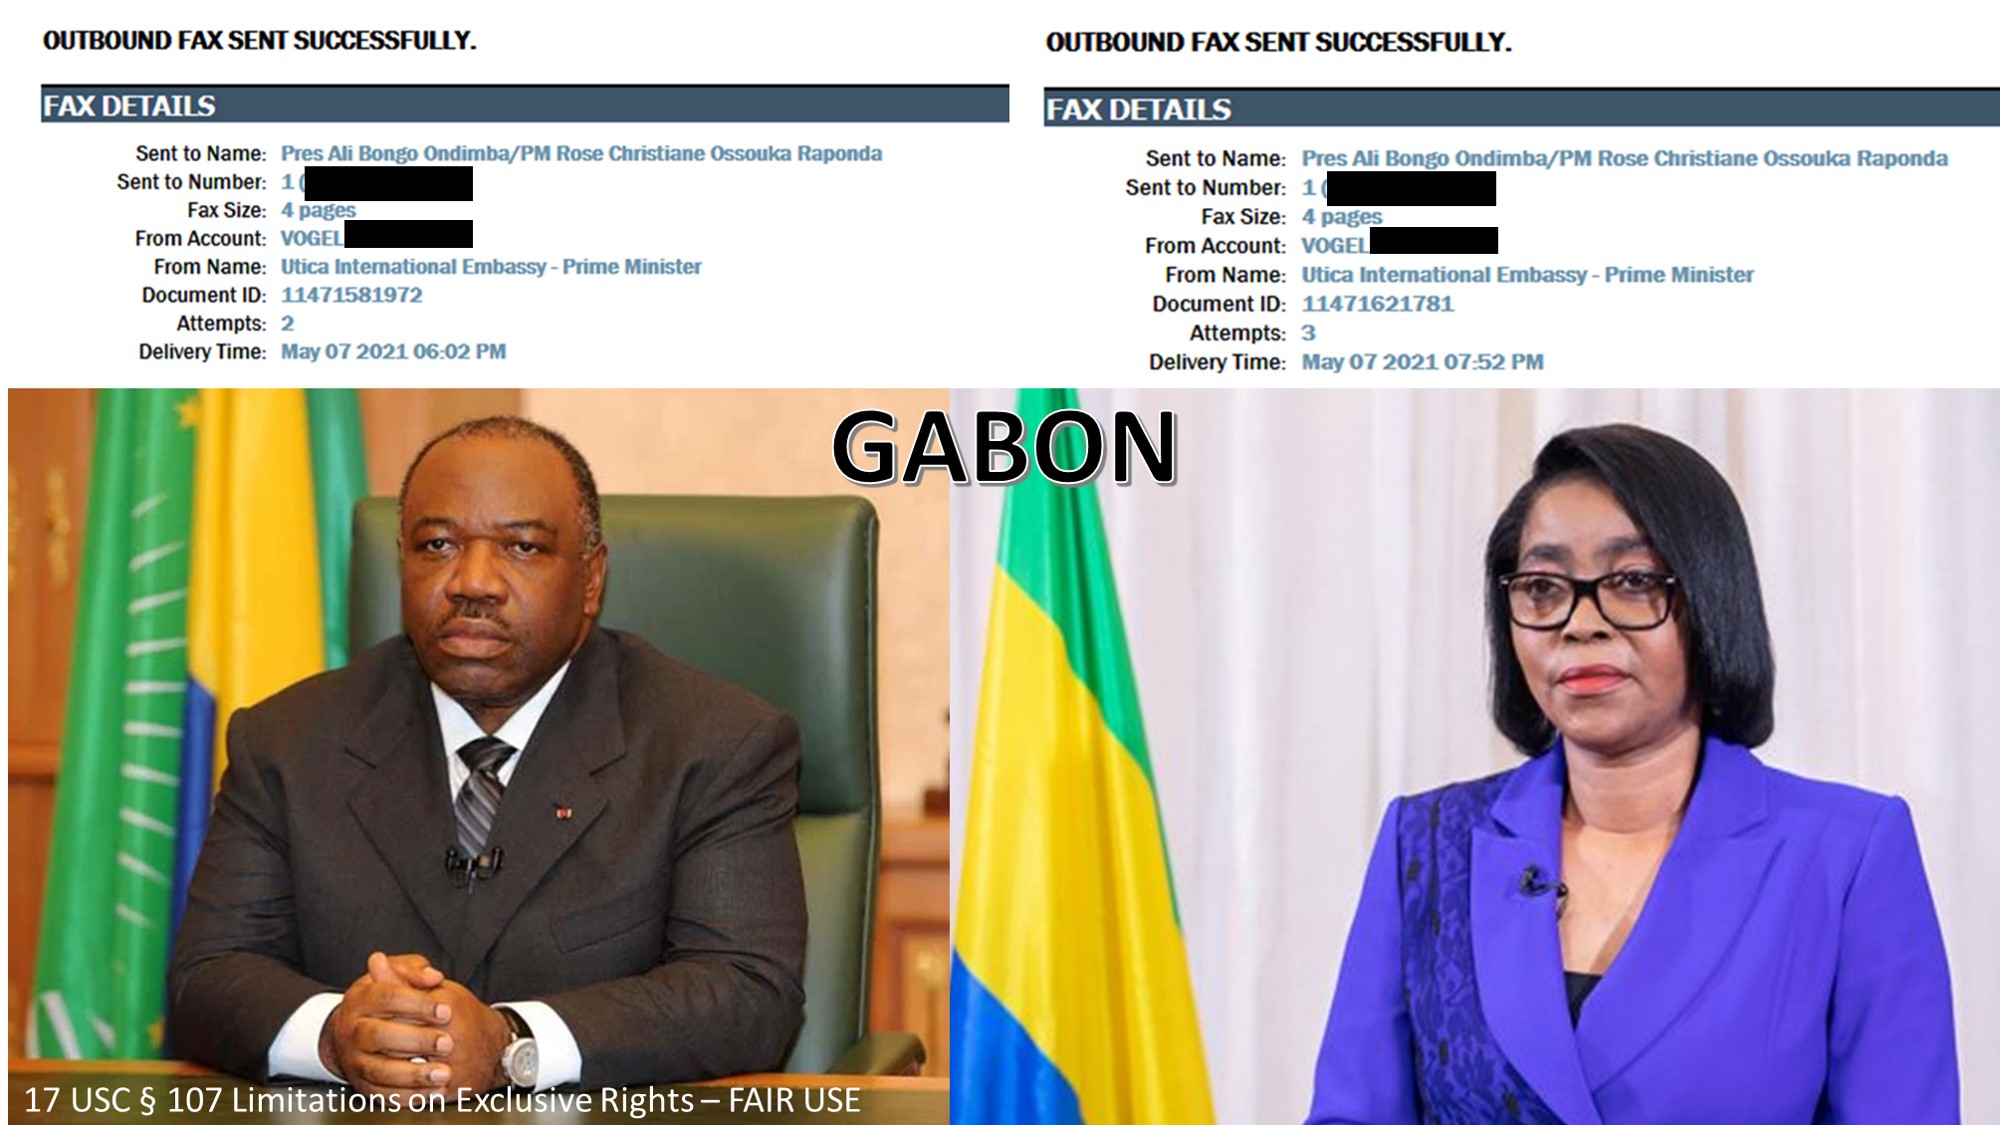 050721 Fax Confirmation Gabon